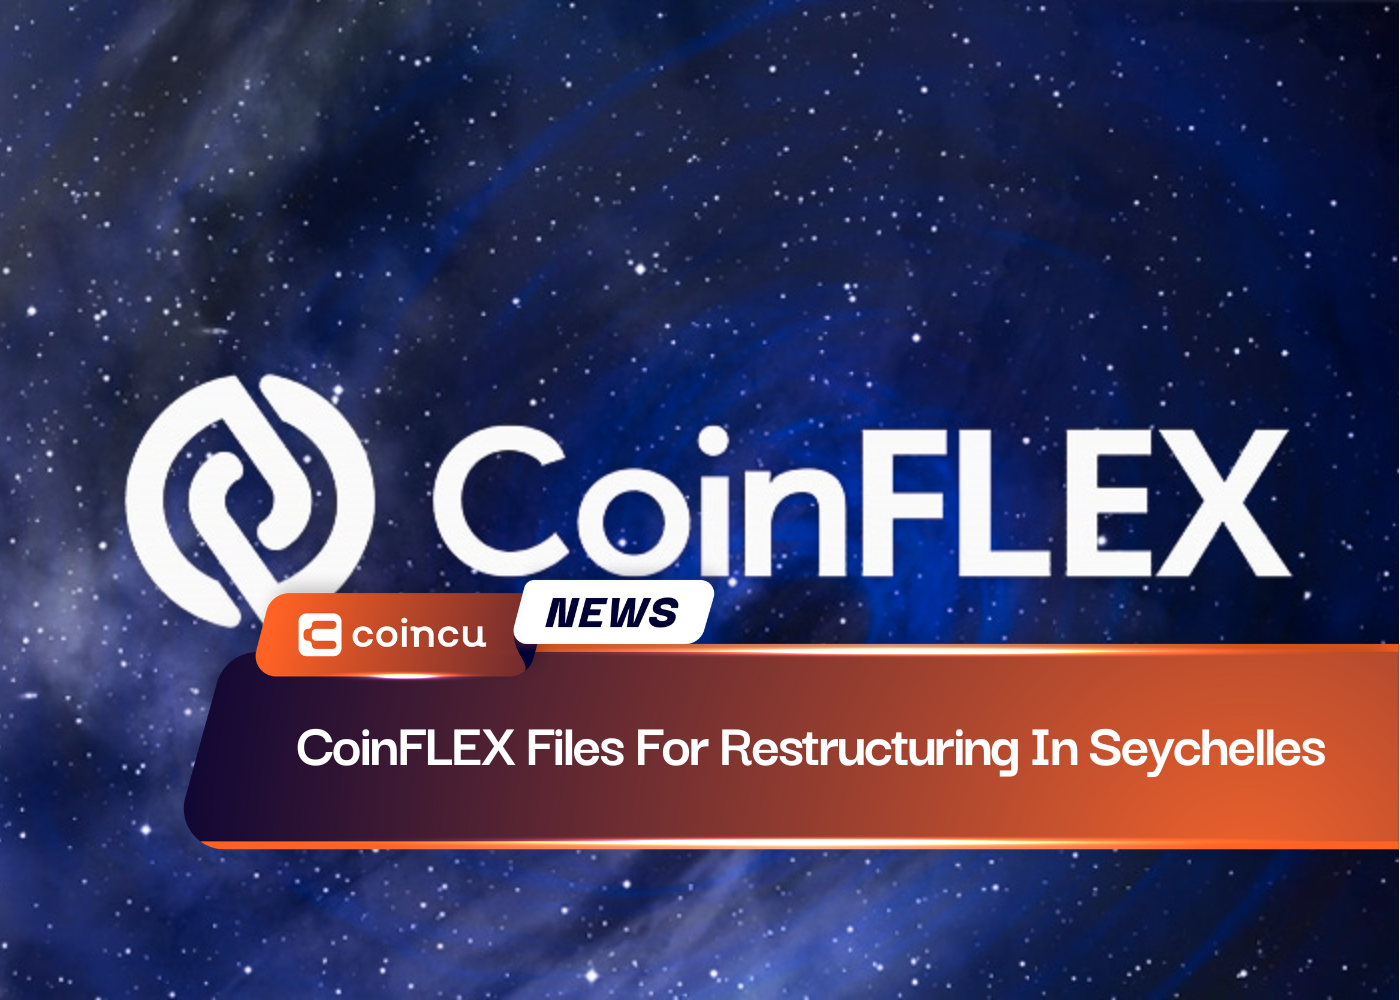 Файлы CoinFLEX для реструктуризации на Сейшельских островах